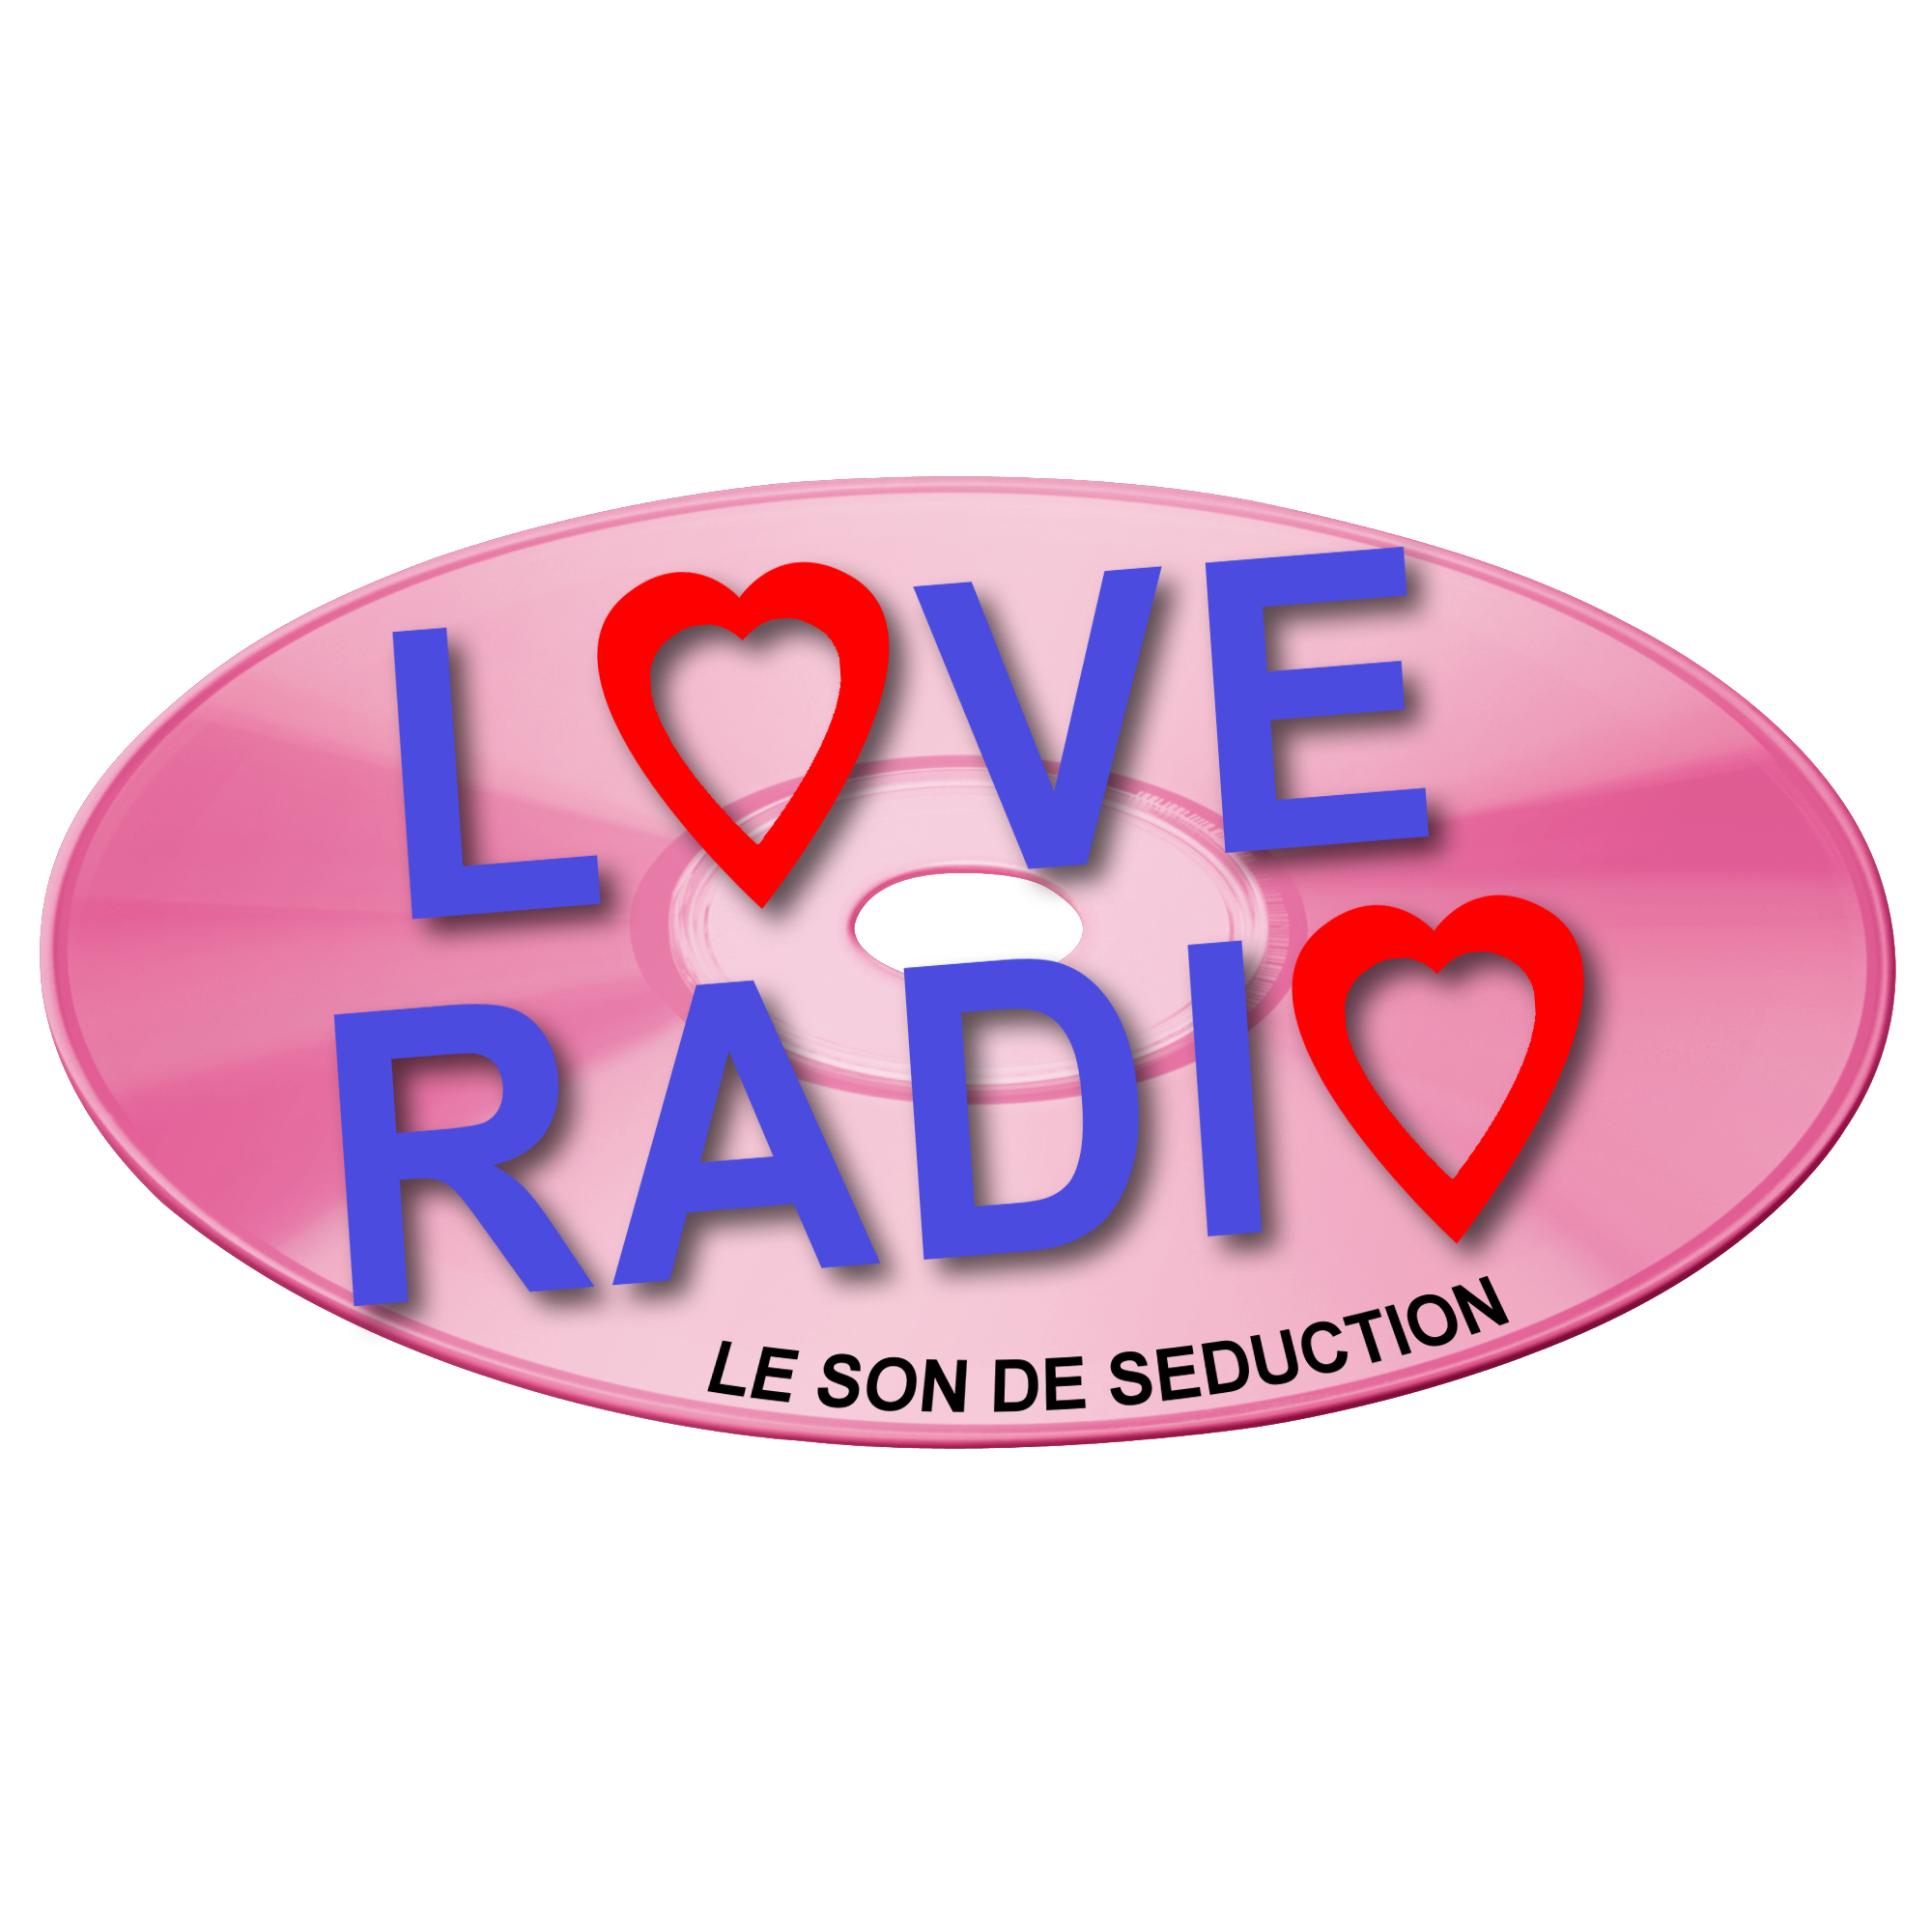 Love радио. Лав радио логотип. Любимое радио. Любовное радио. Радио любимые хиты слушать